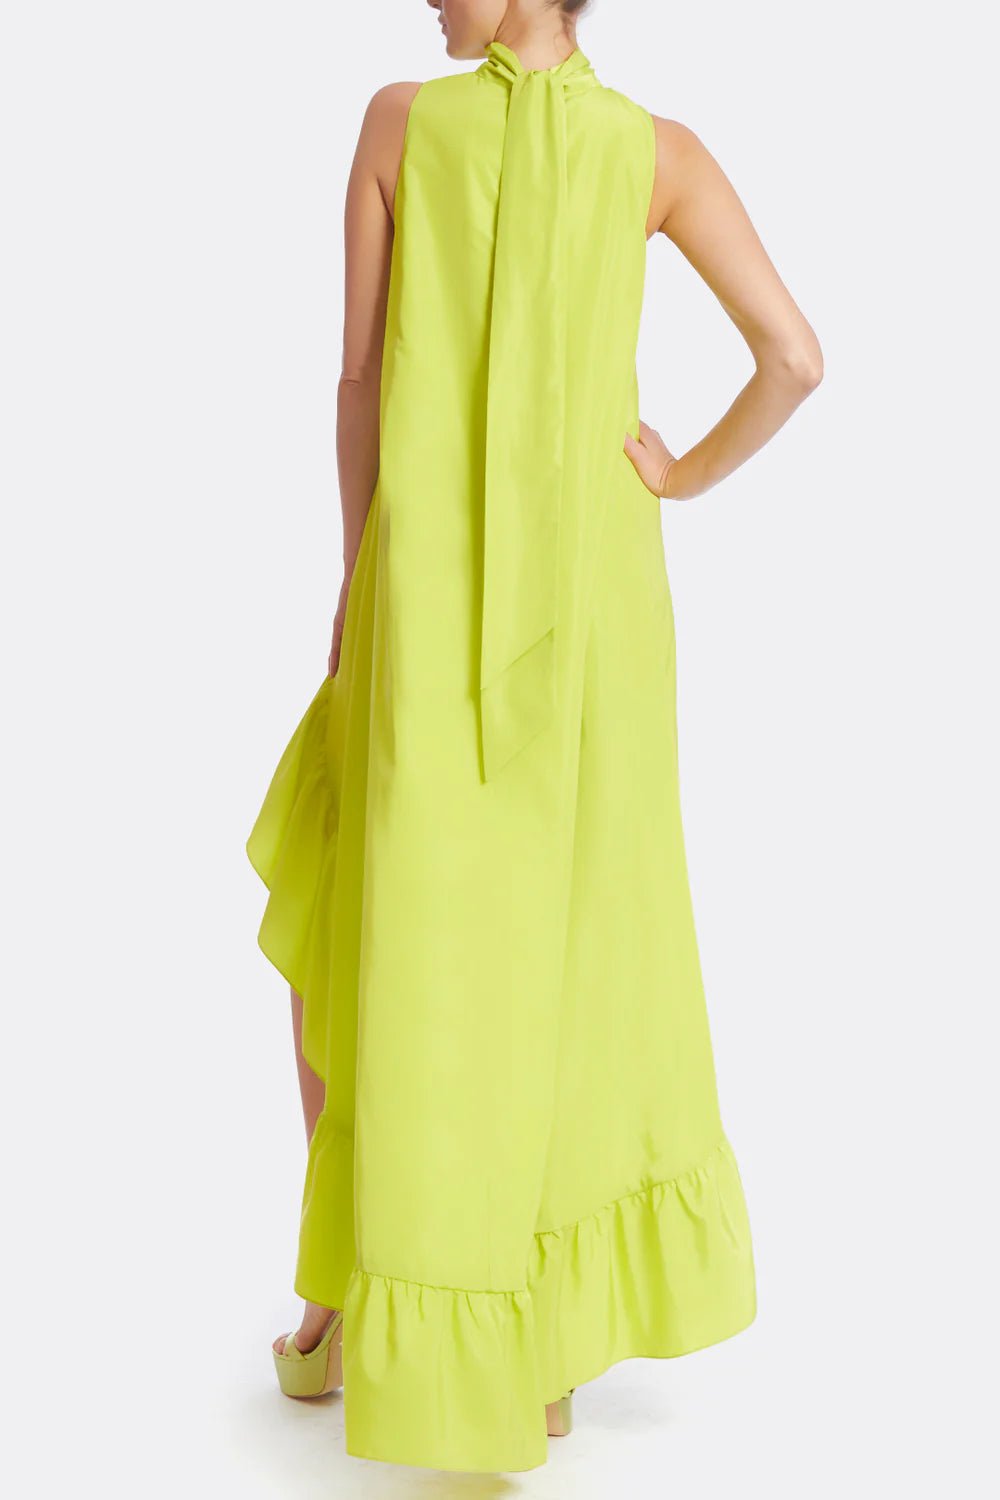 One33 Yolanda Dress in Lime - Estilo Boutique